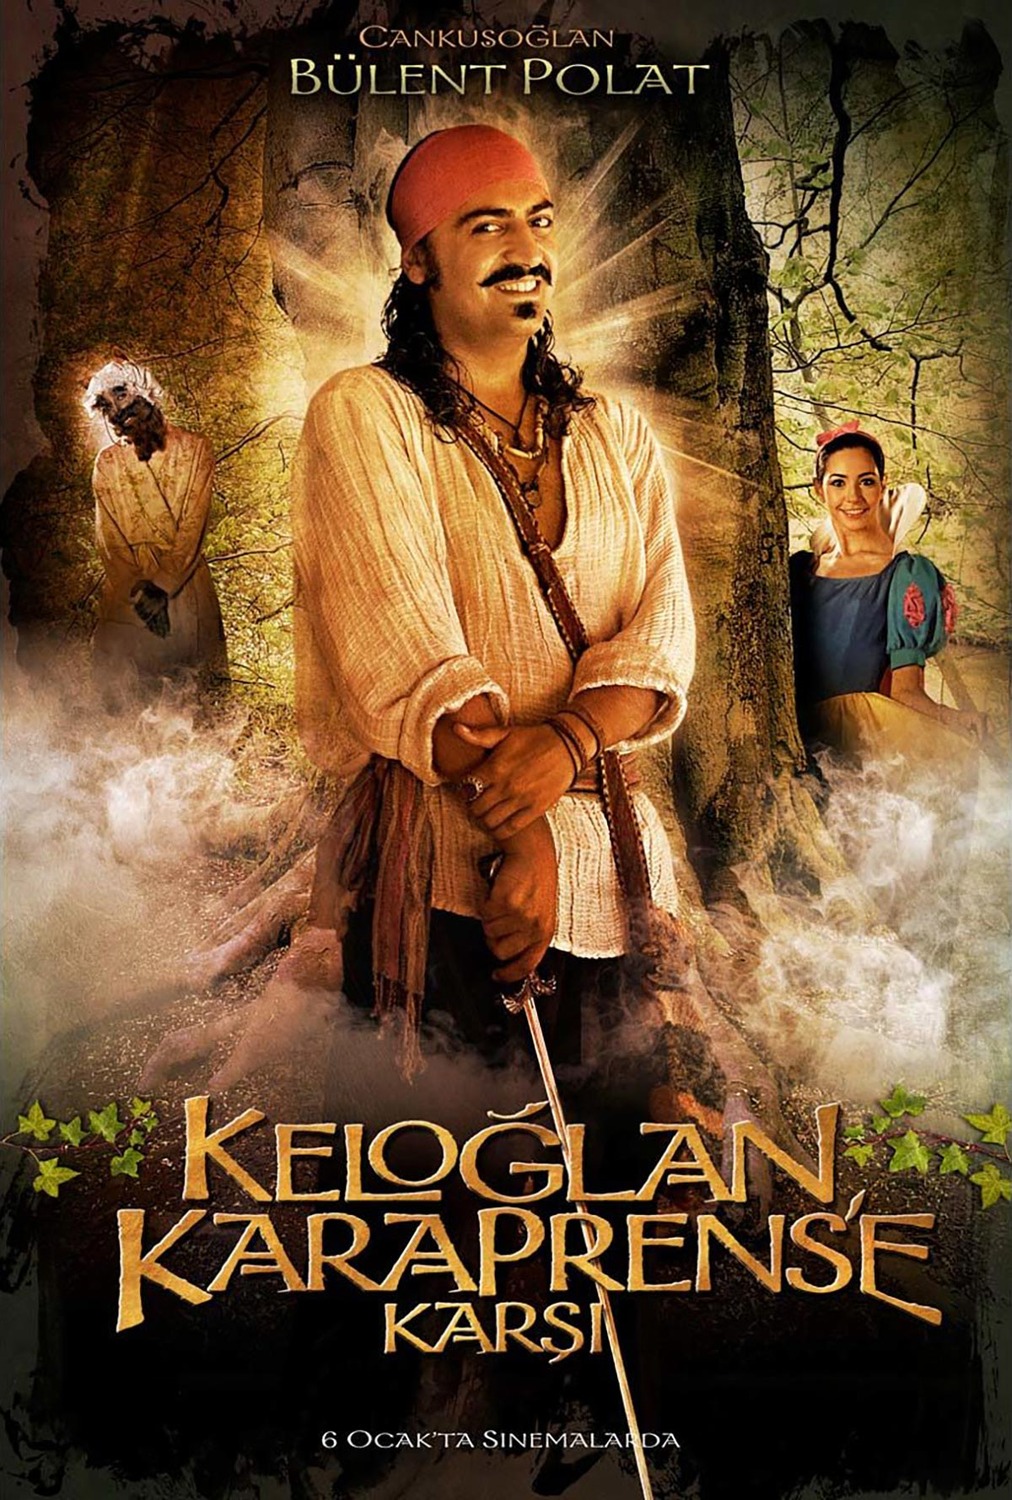 Extra Large Movie Poster Image for Keloglan Karaprens'e Karsi (#7 of 8)